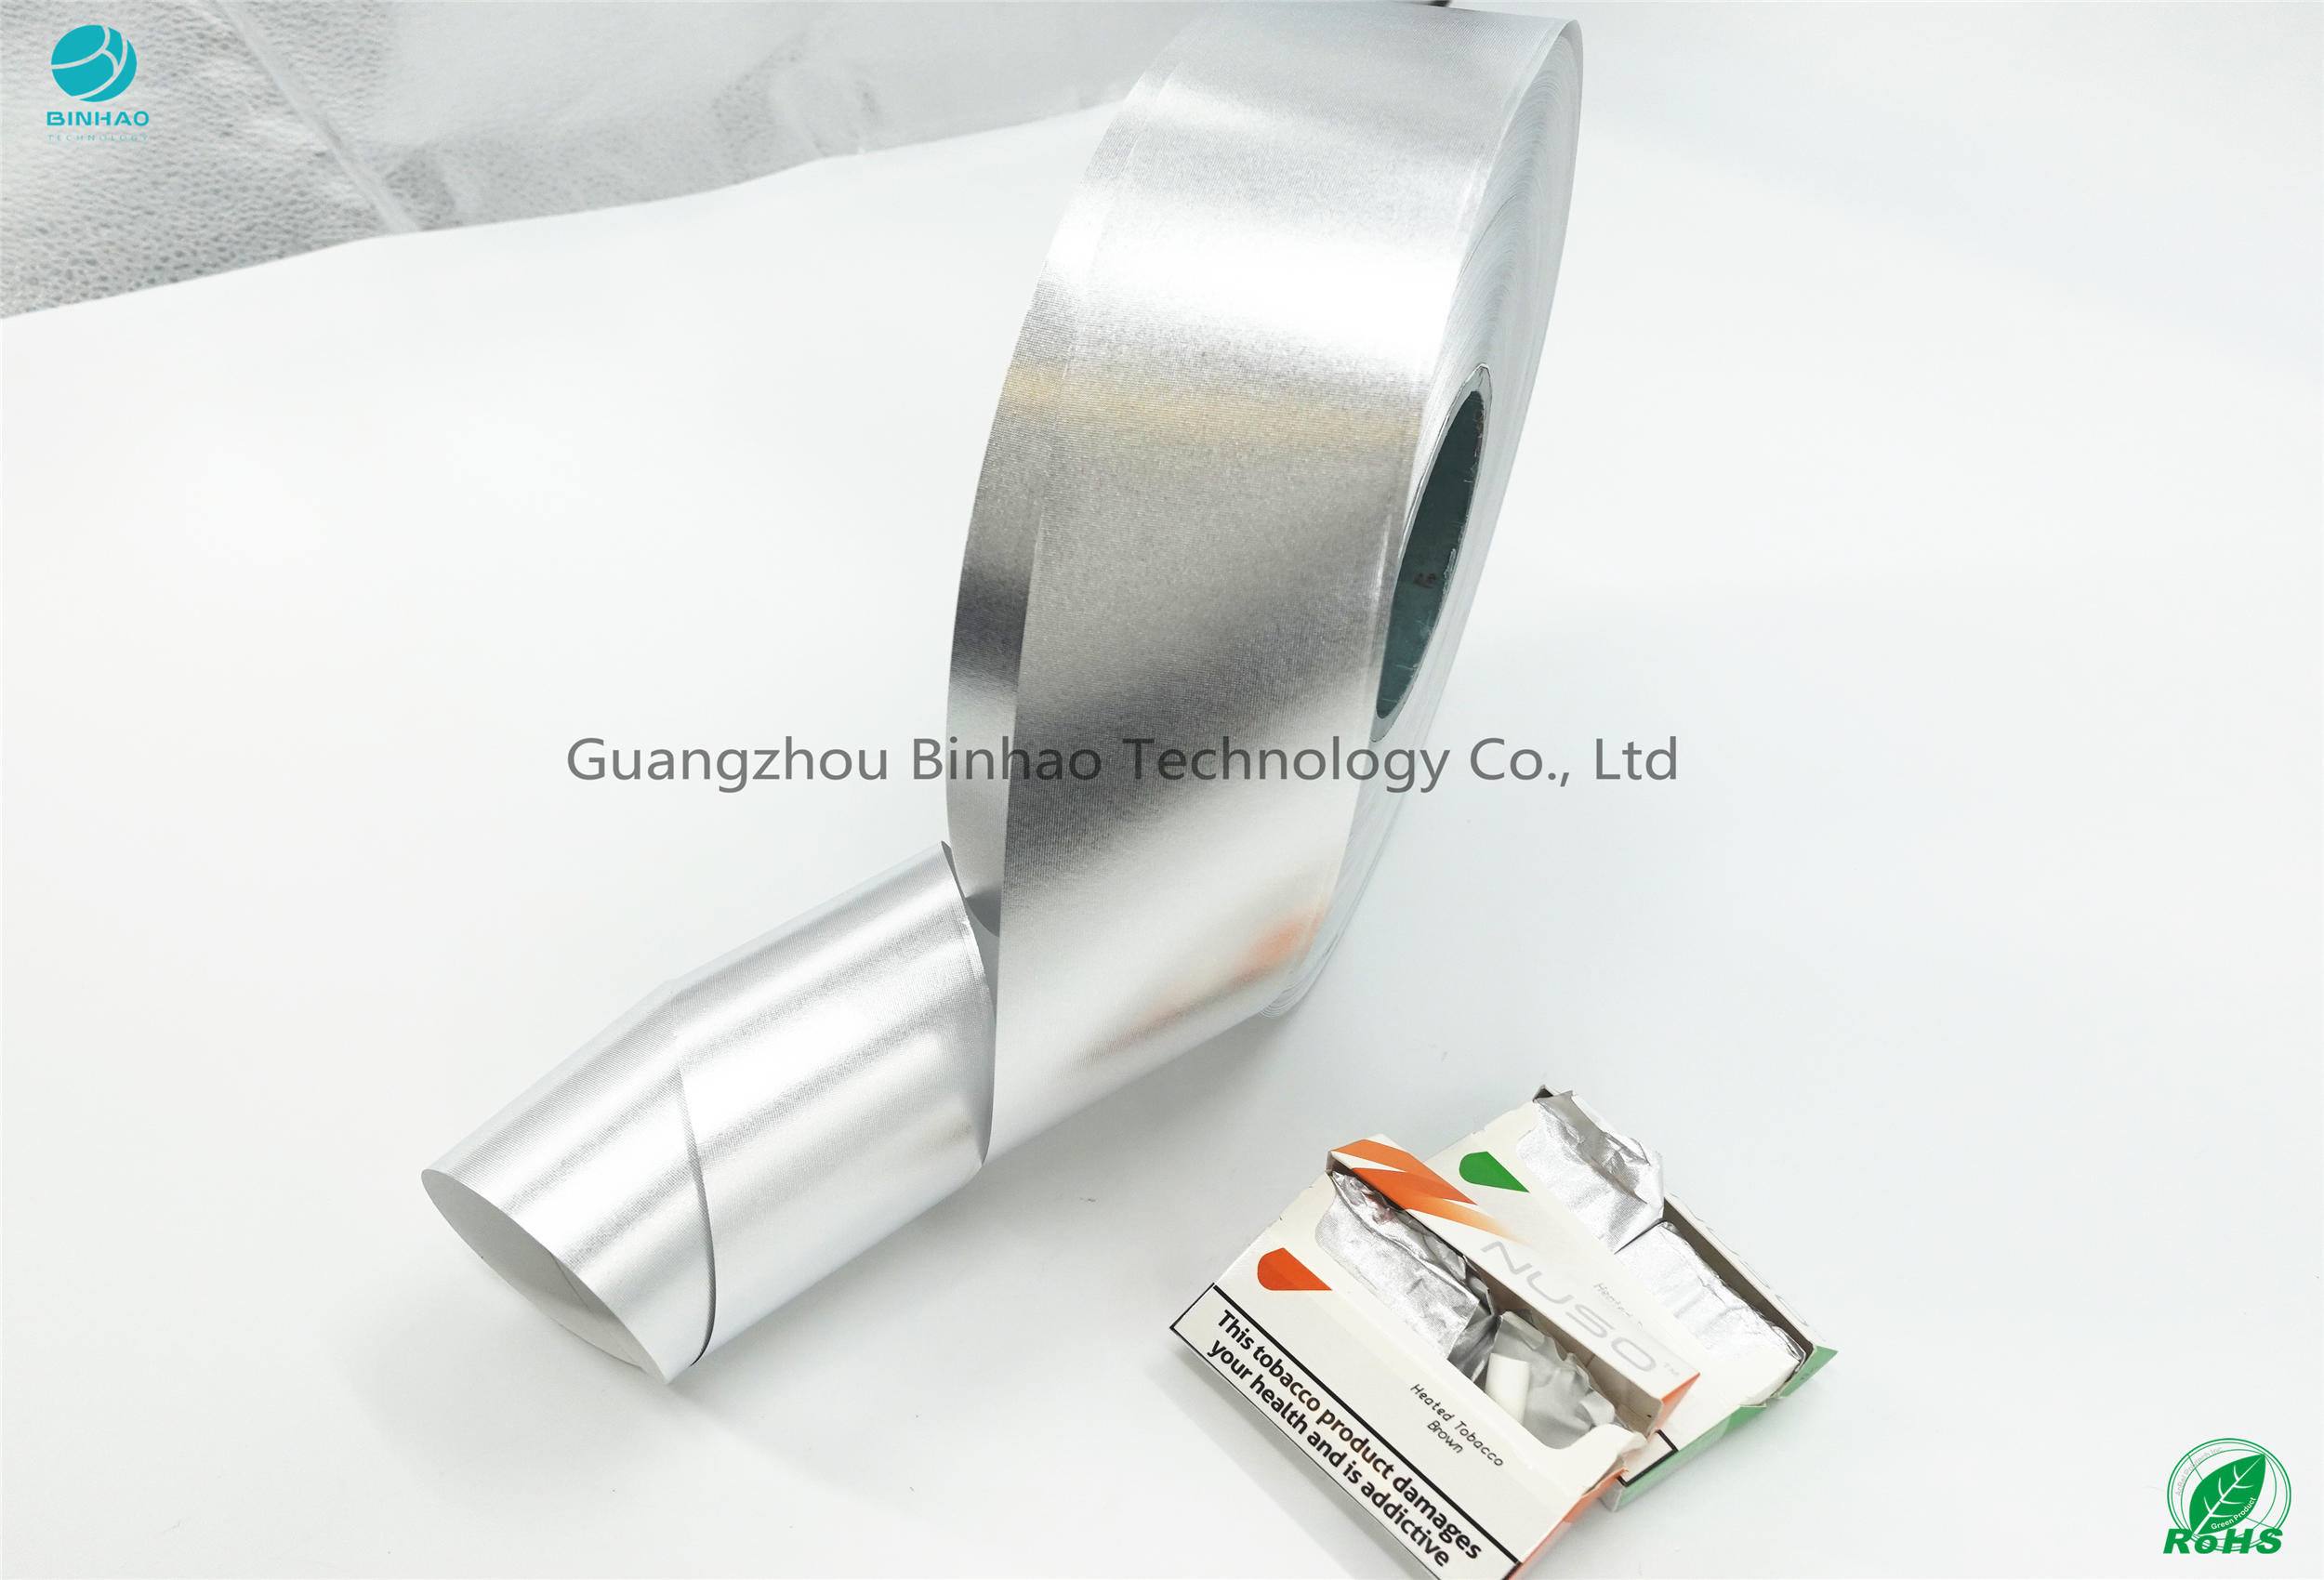 Materiali esterni del pacchetto della carta del foglio di alluminio della E-sigaretta del diametro 480mm HNB